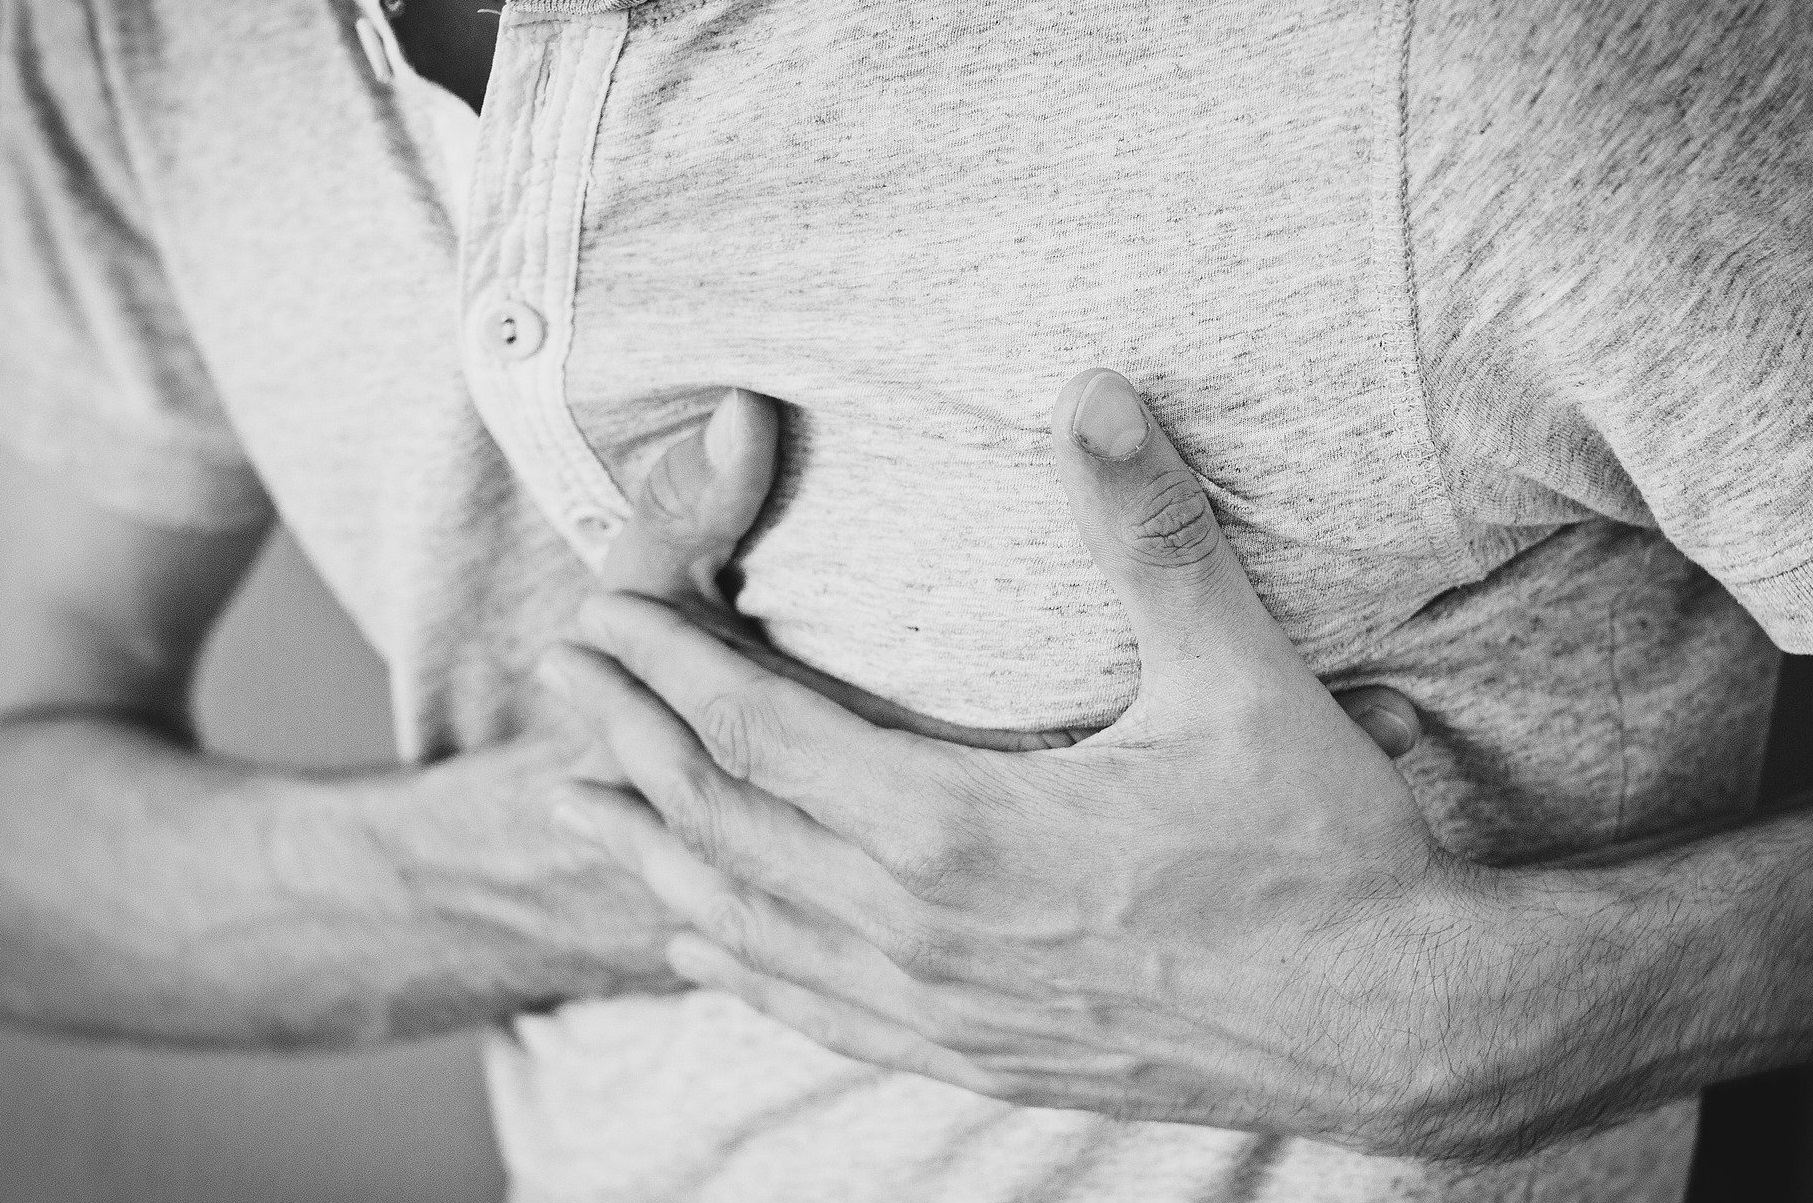 Covid-19| Chiar și persoanele asimptomatice pot avea probleme cardiace grave, conform virusologilor